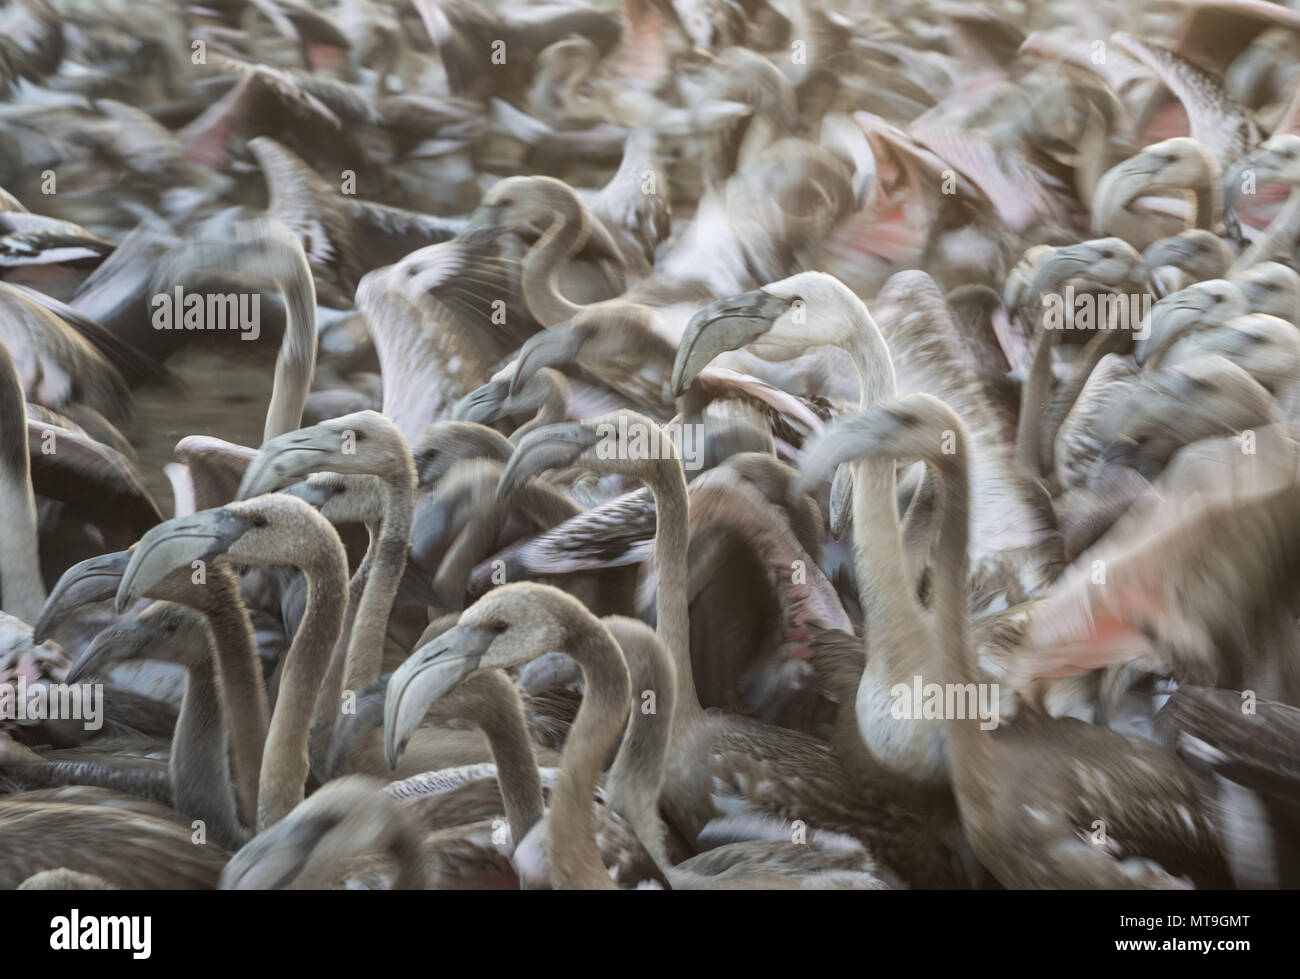 Mehr Flamingo (Phoenicopterus Roseus). Immatures in einem Gehäuse an der Laguna de Fuente de Piedra in der Nähe der Stadt Antequera erwarten eine medizinische überprüfung und das Klingeln. Dies ist der größte natürliche See in Andalusien und Europas nur Inland Nährboden für diese Art. Wirkung durch Schwenken der Kamera verwischt. Provinz Malaga, Andalusien, Spanien. Stockfoto